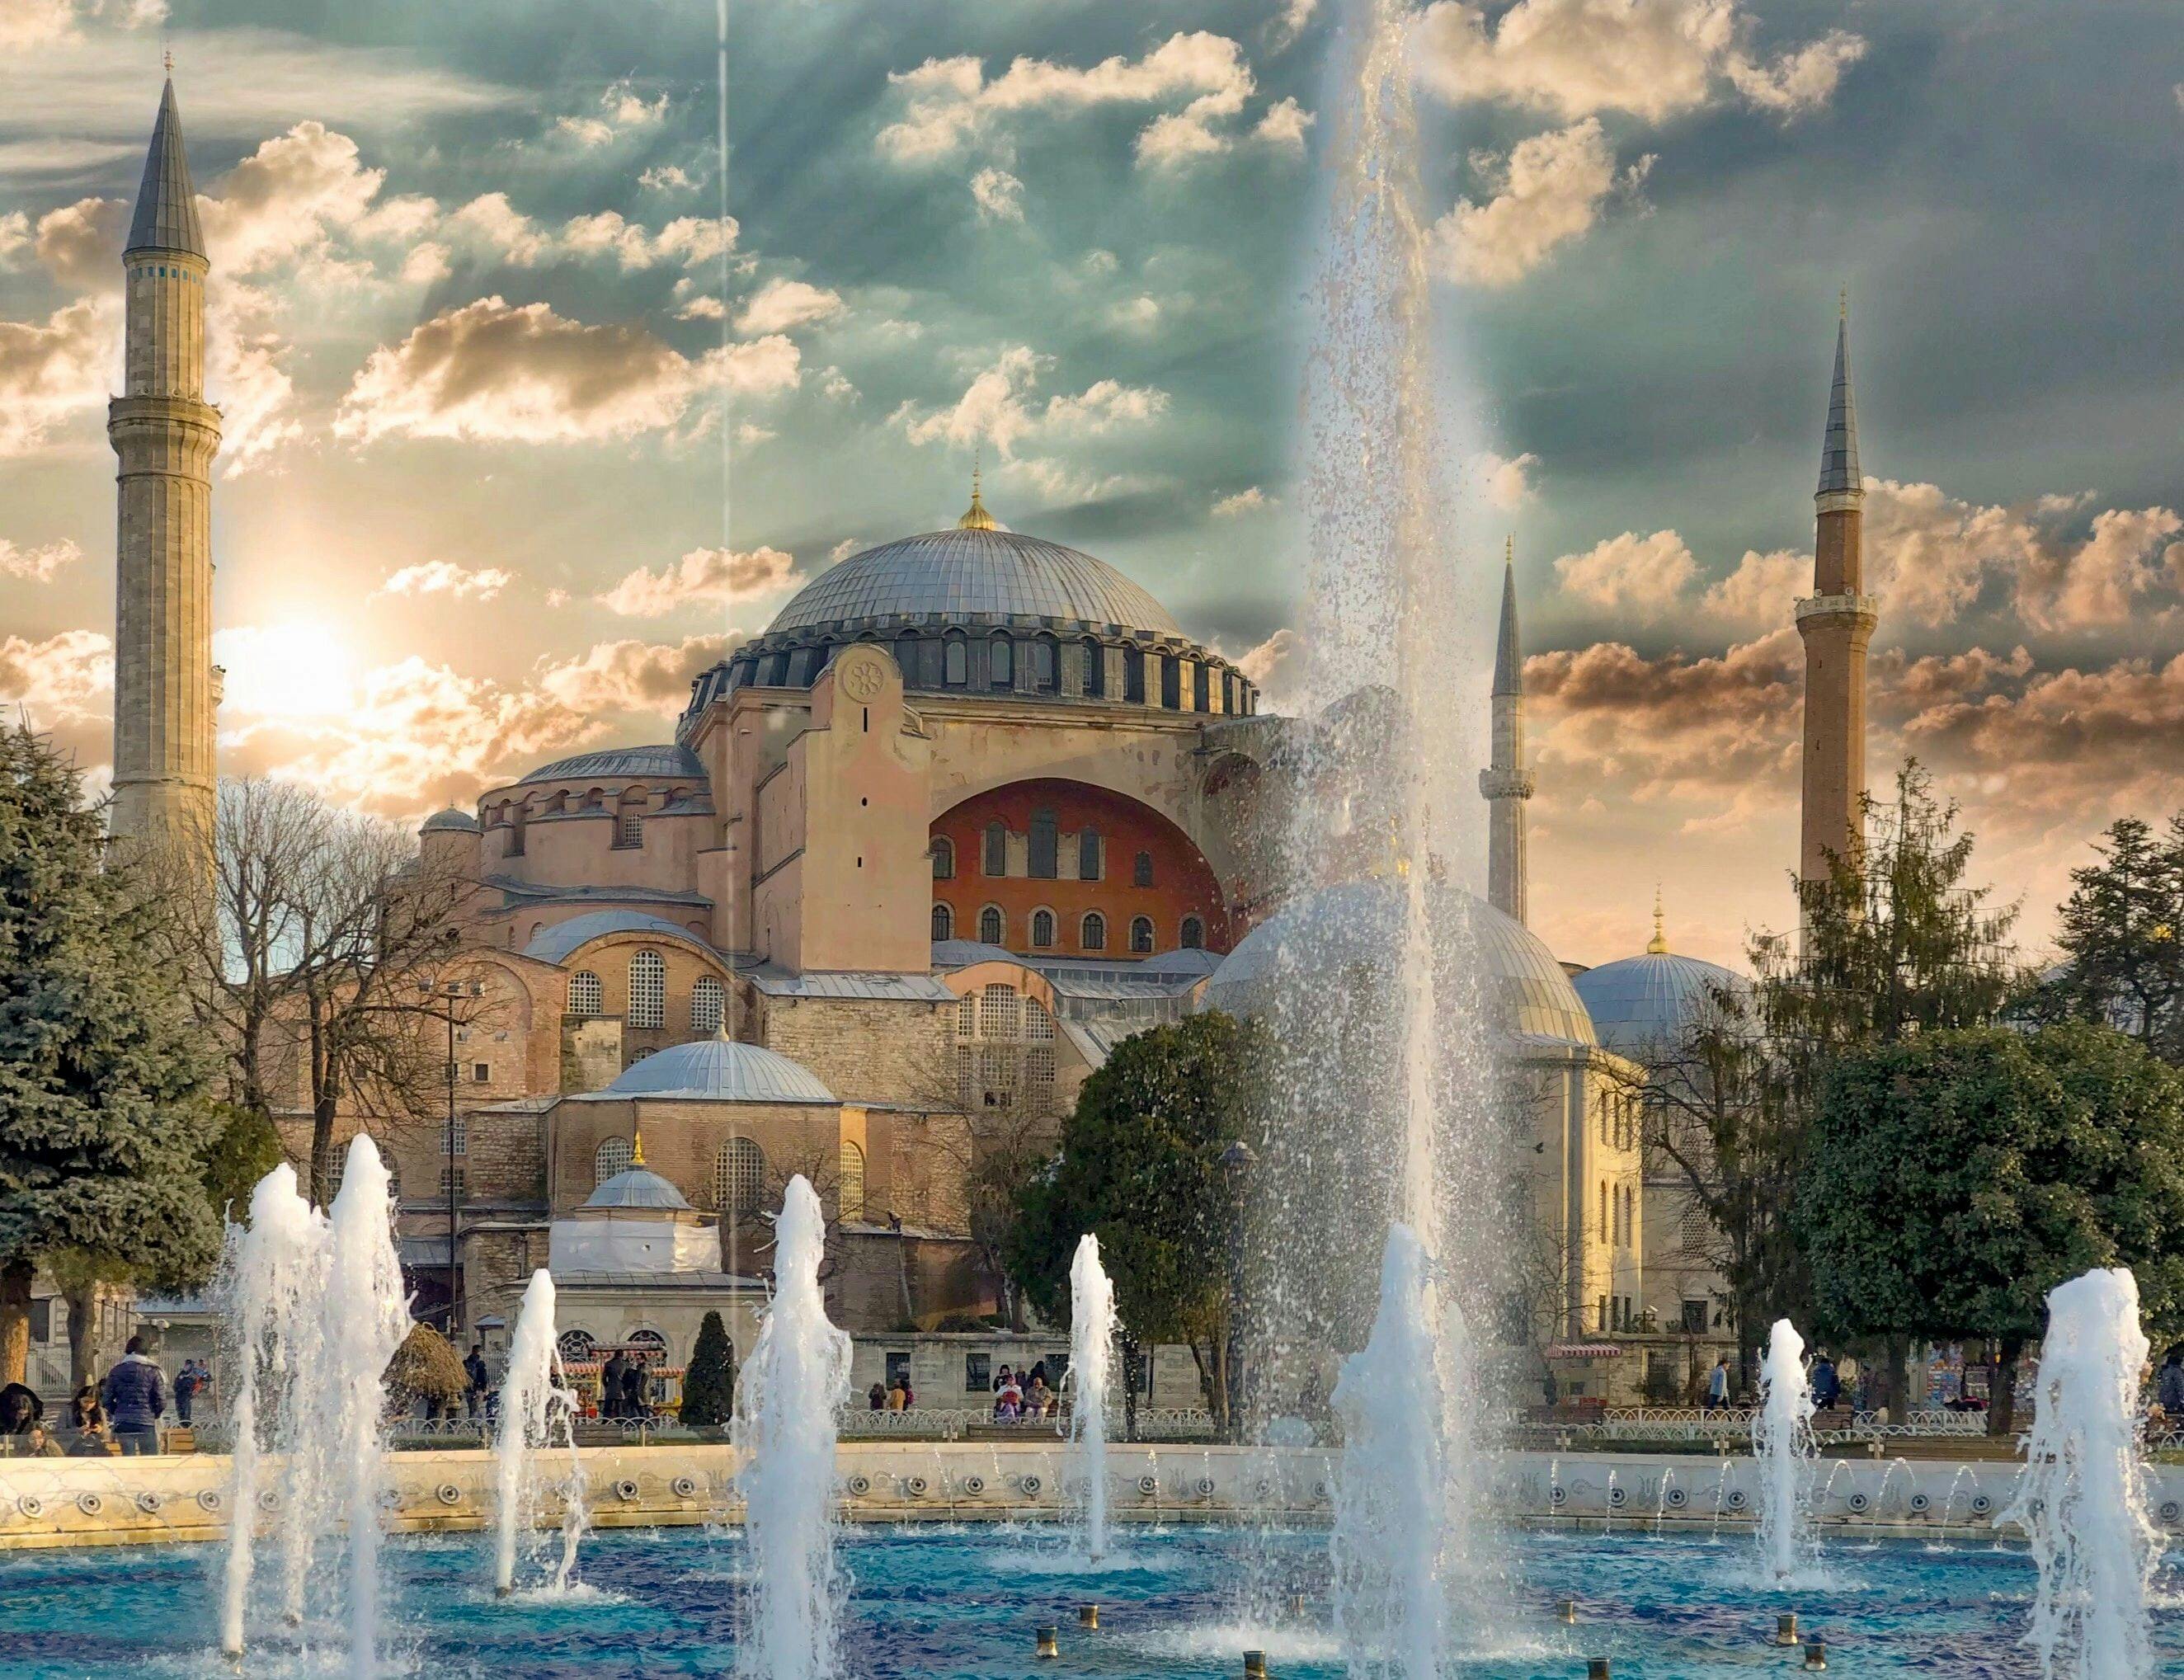 Hagia Sophia mosque in Istanbul Turkey.